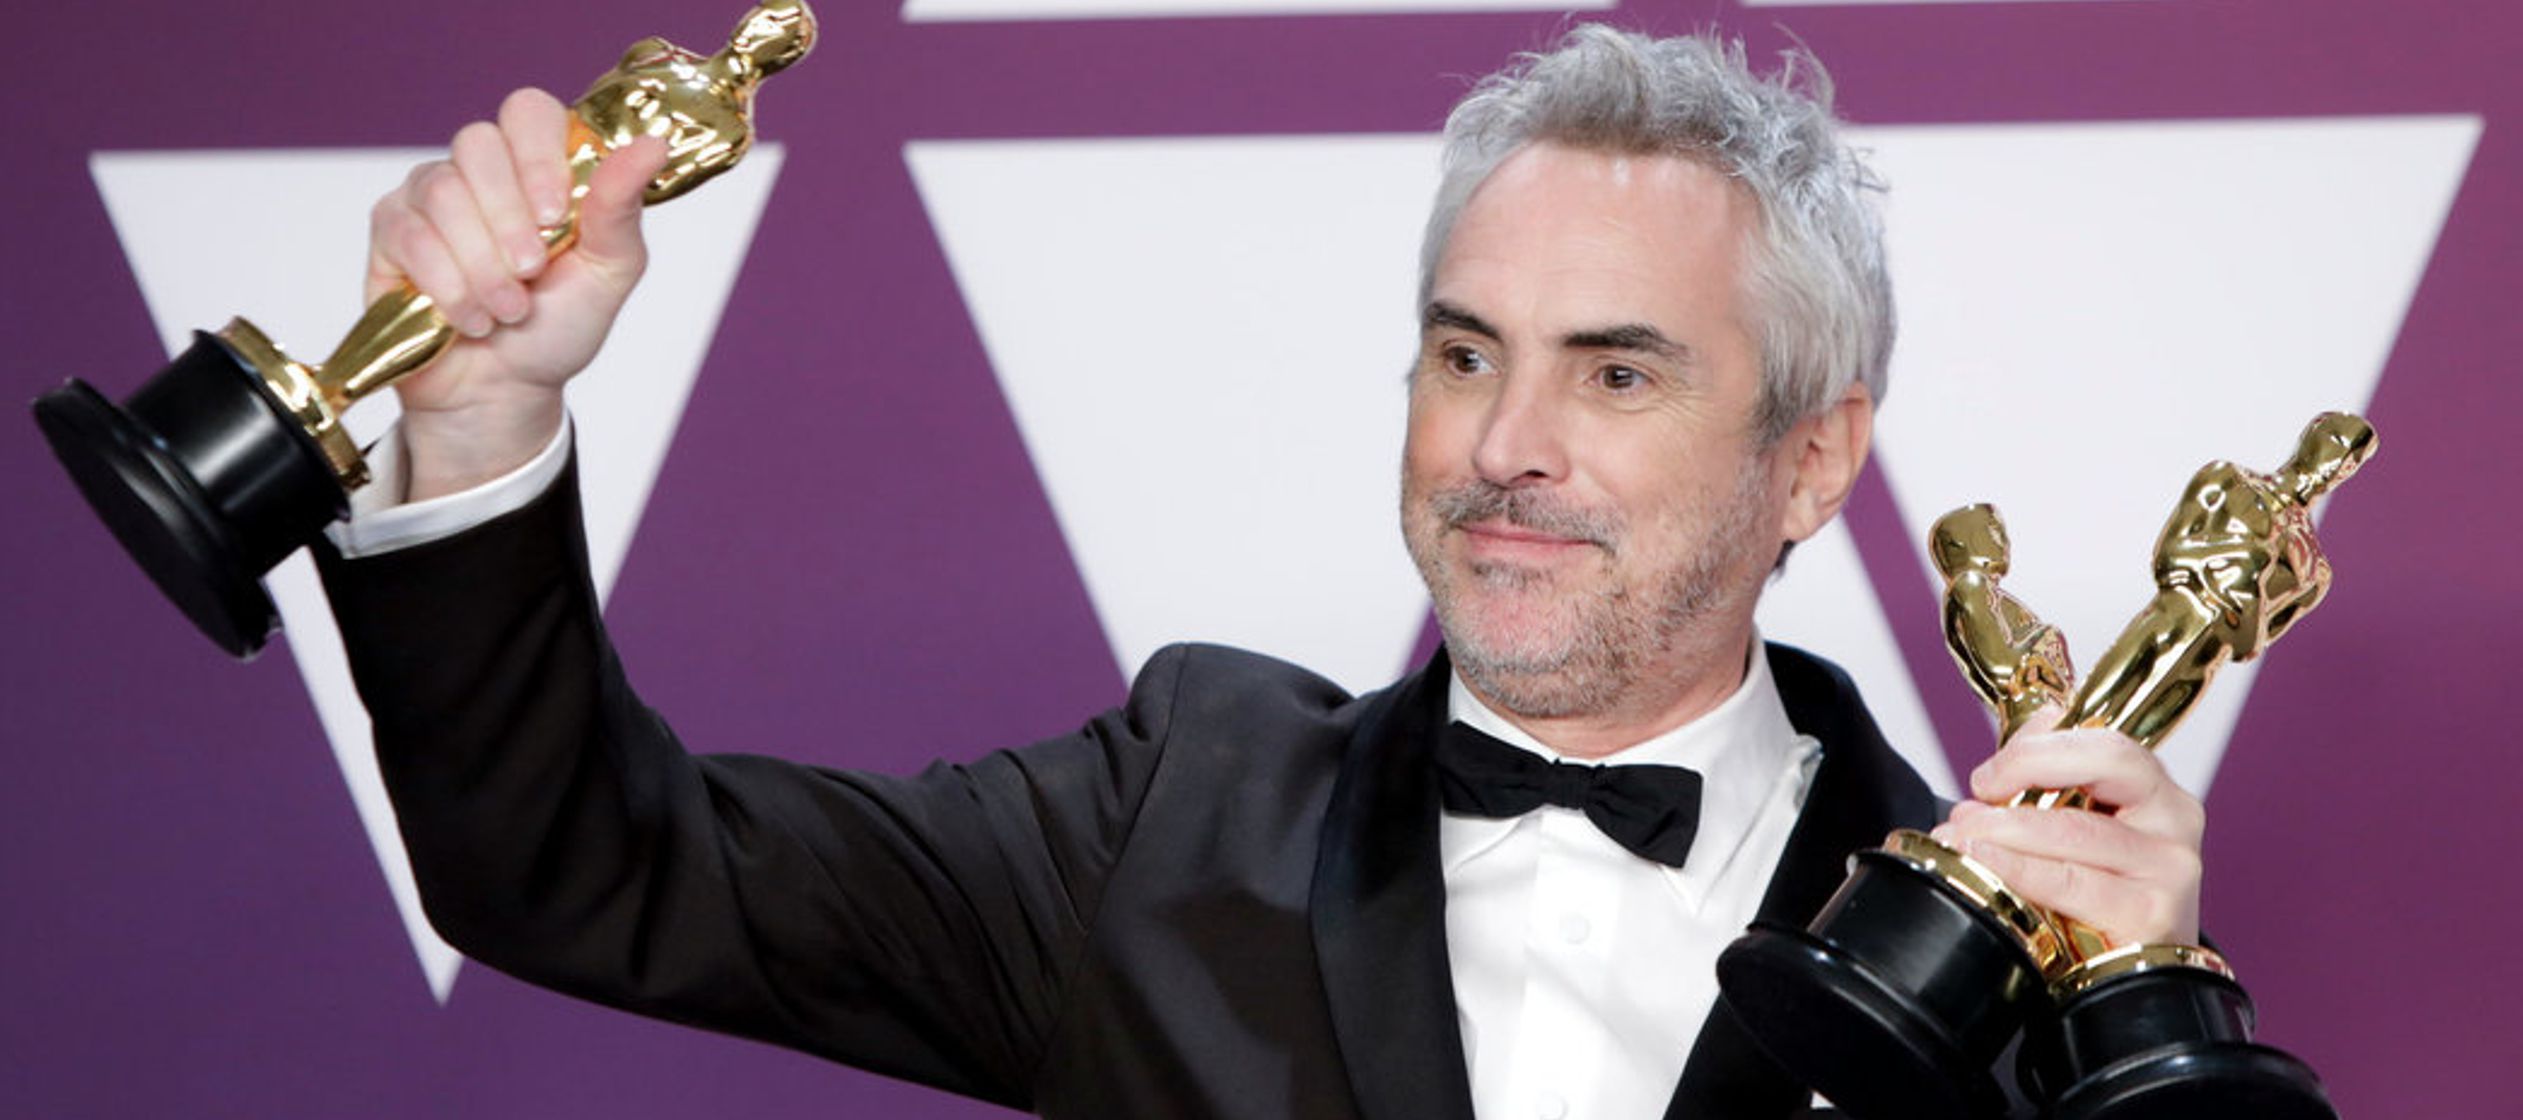 Cuando Alfonso Cuarón ganó el Oscar a mejor director el 24 de febrero, dio...